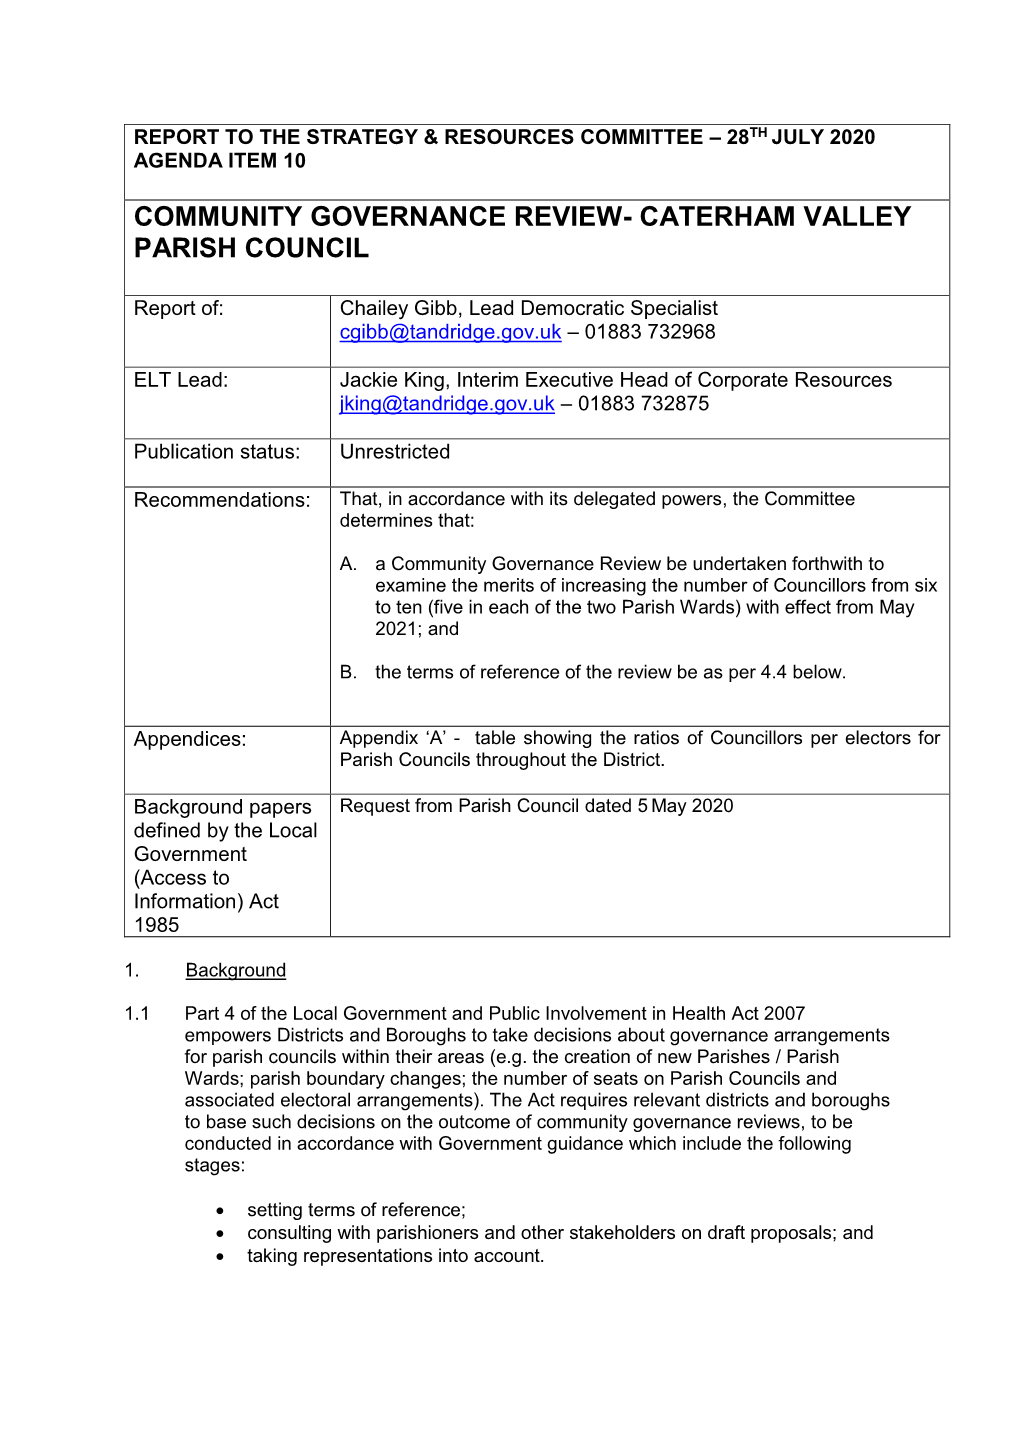 Caterham Valley Parish Council